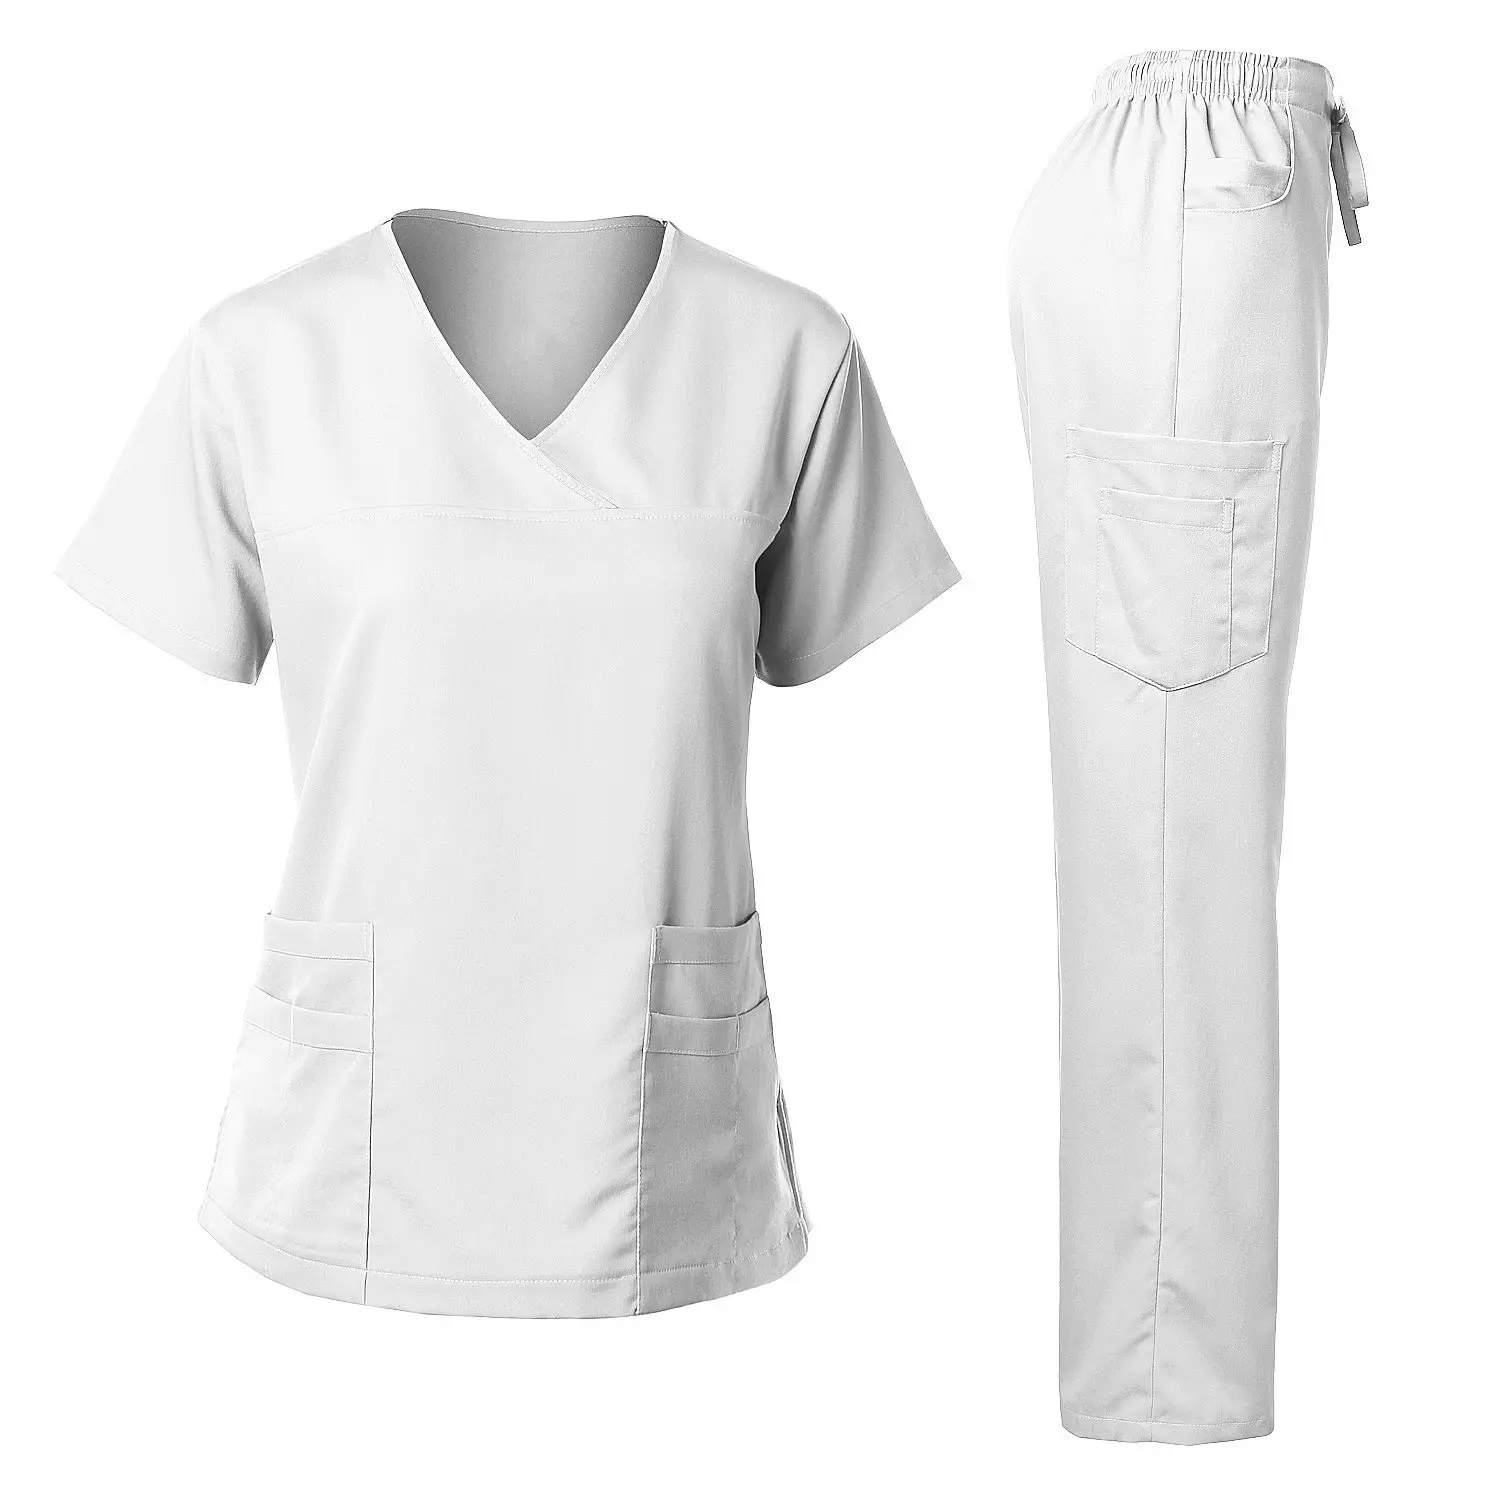 Scrub medico che allatta Jogger infermiera uniforme da ospedale donna Top Scrub Suit